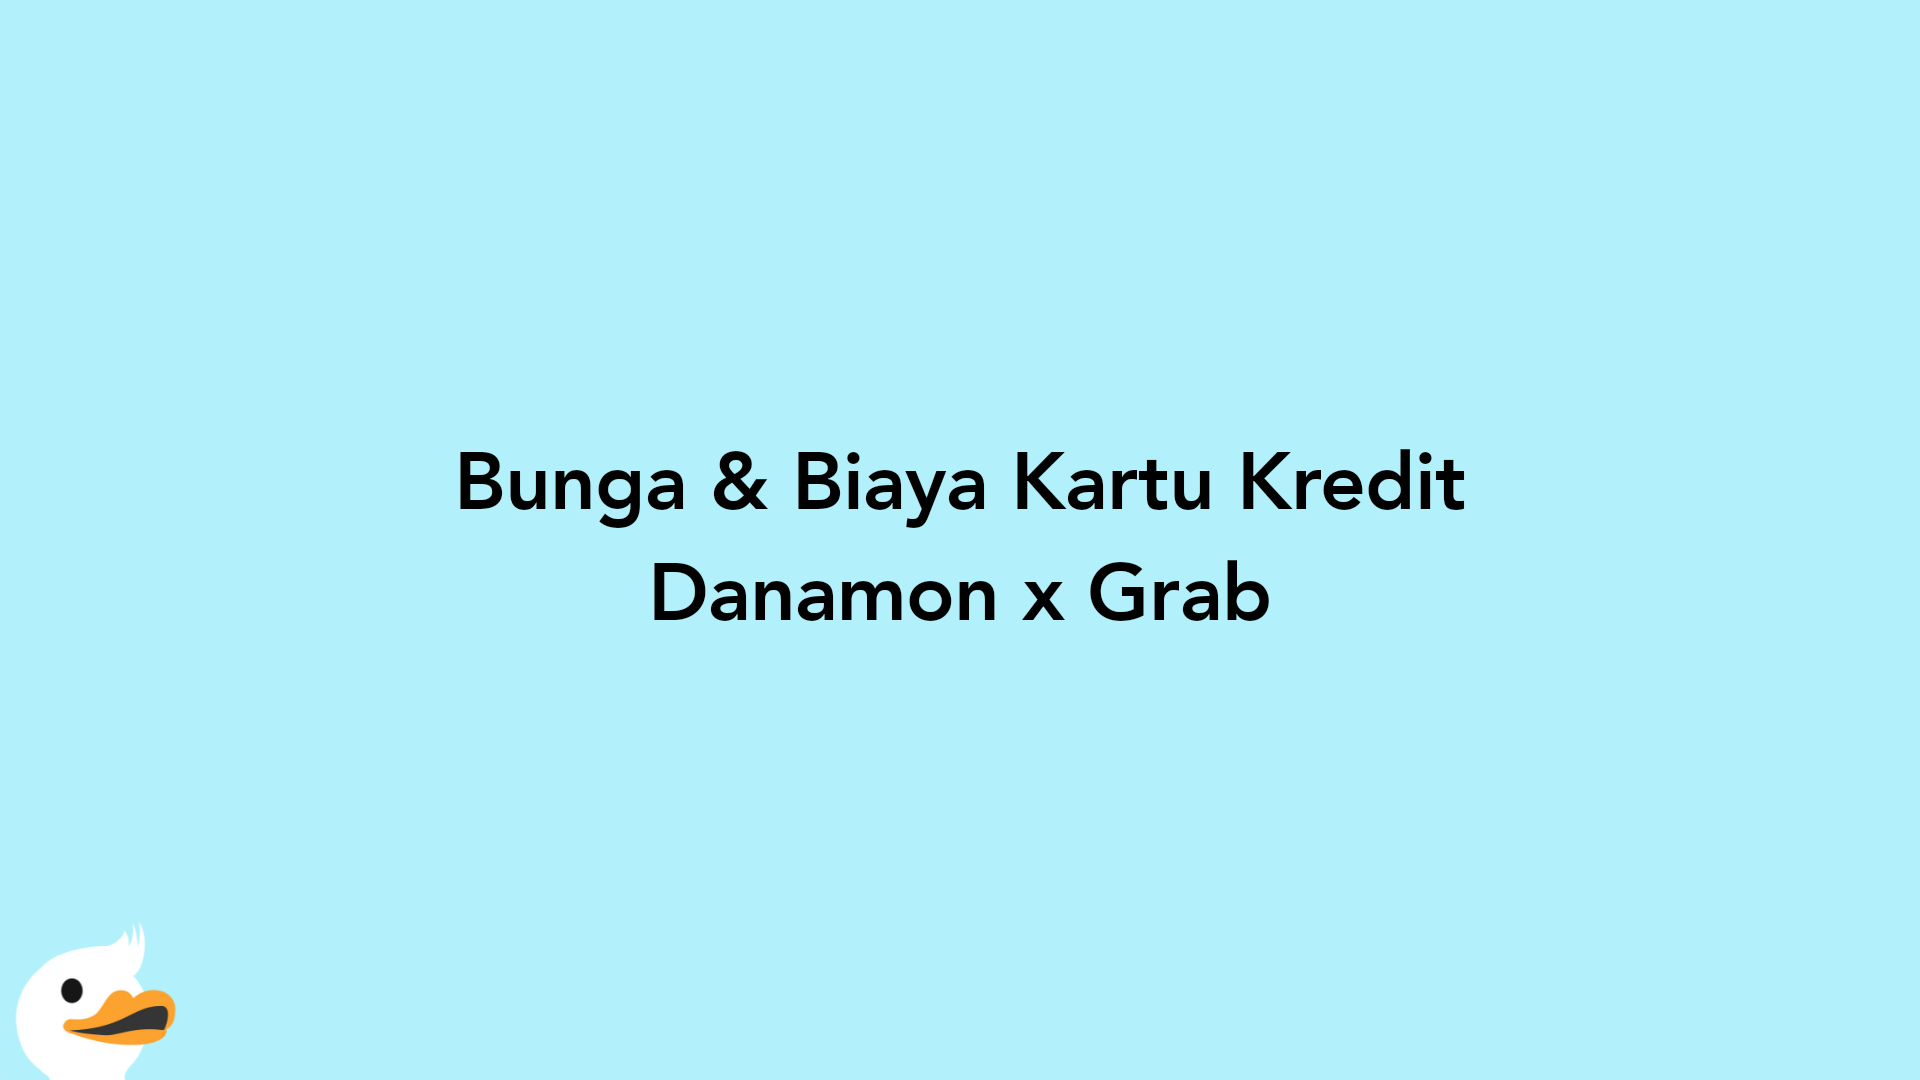 Bunga & Biaya Kartu Kredit Danamon x Grab